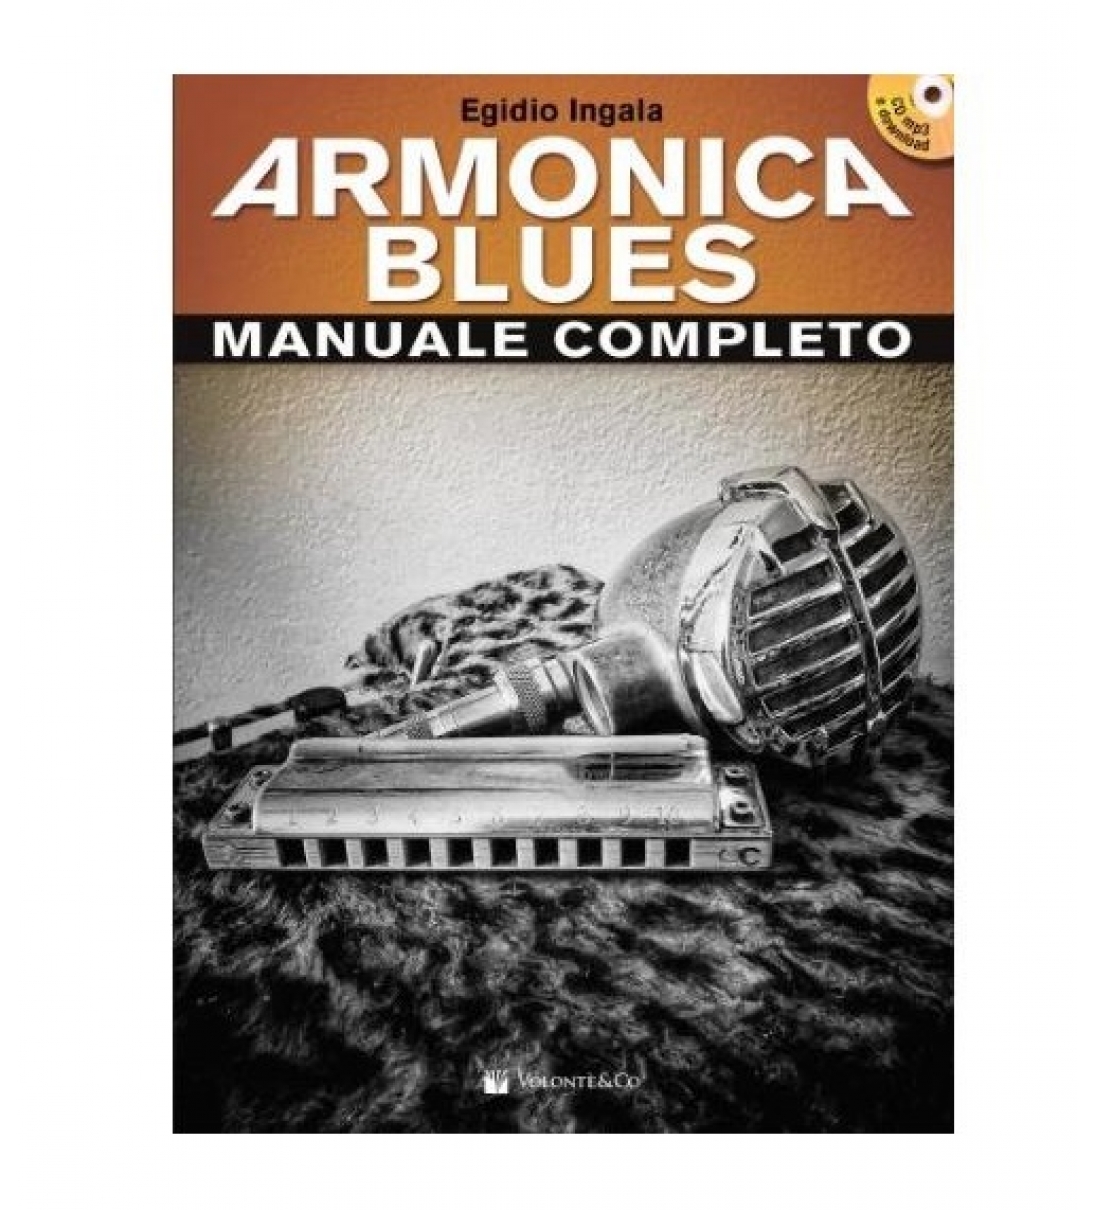 Armonica Blues manuale completo (con CD MP3 e Download)